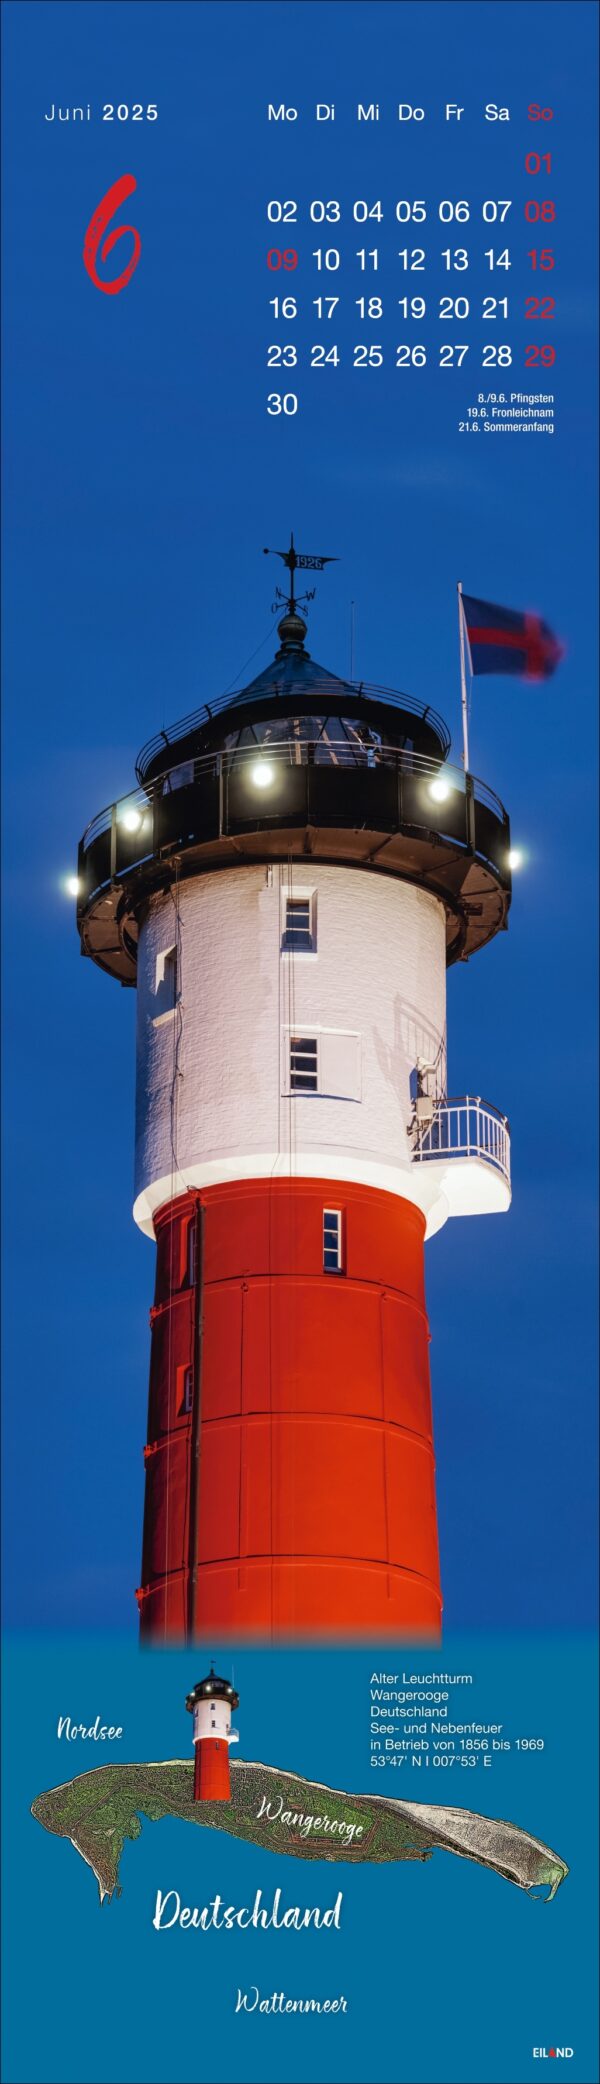 LongEiland – Kalender 2025 für Juni mit einem großen, rot-weißen Leuchtturm auf LongEiland bei Dämmerung. Der Leuchtturm hat eine auffällige